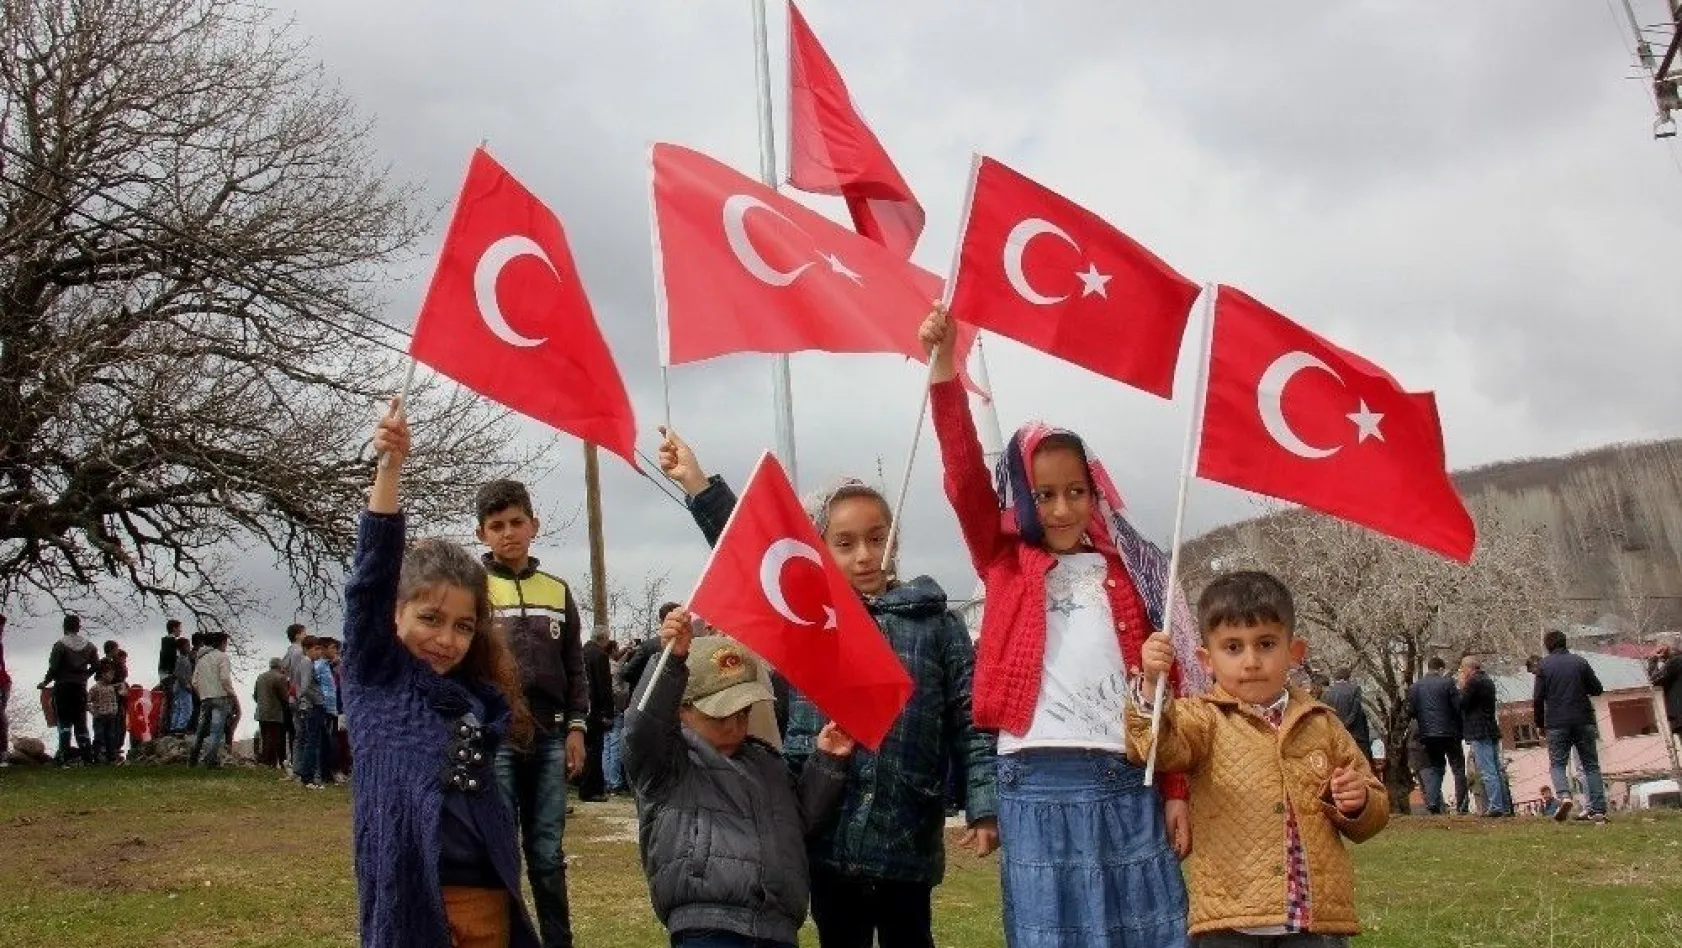 Bingöl'de köy girişine dev Türk bayrağı asıldı
